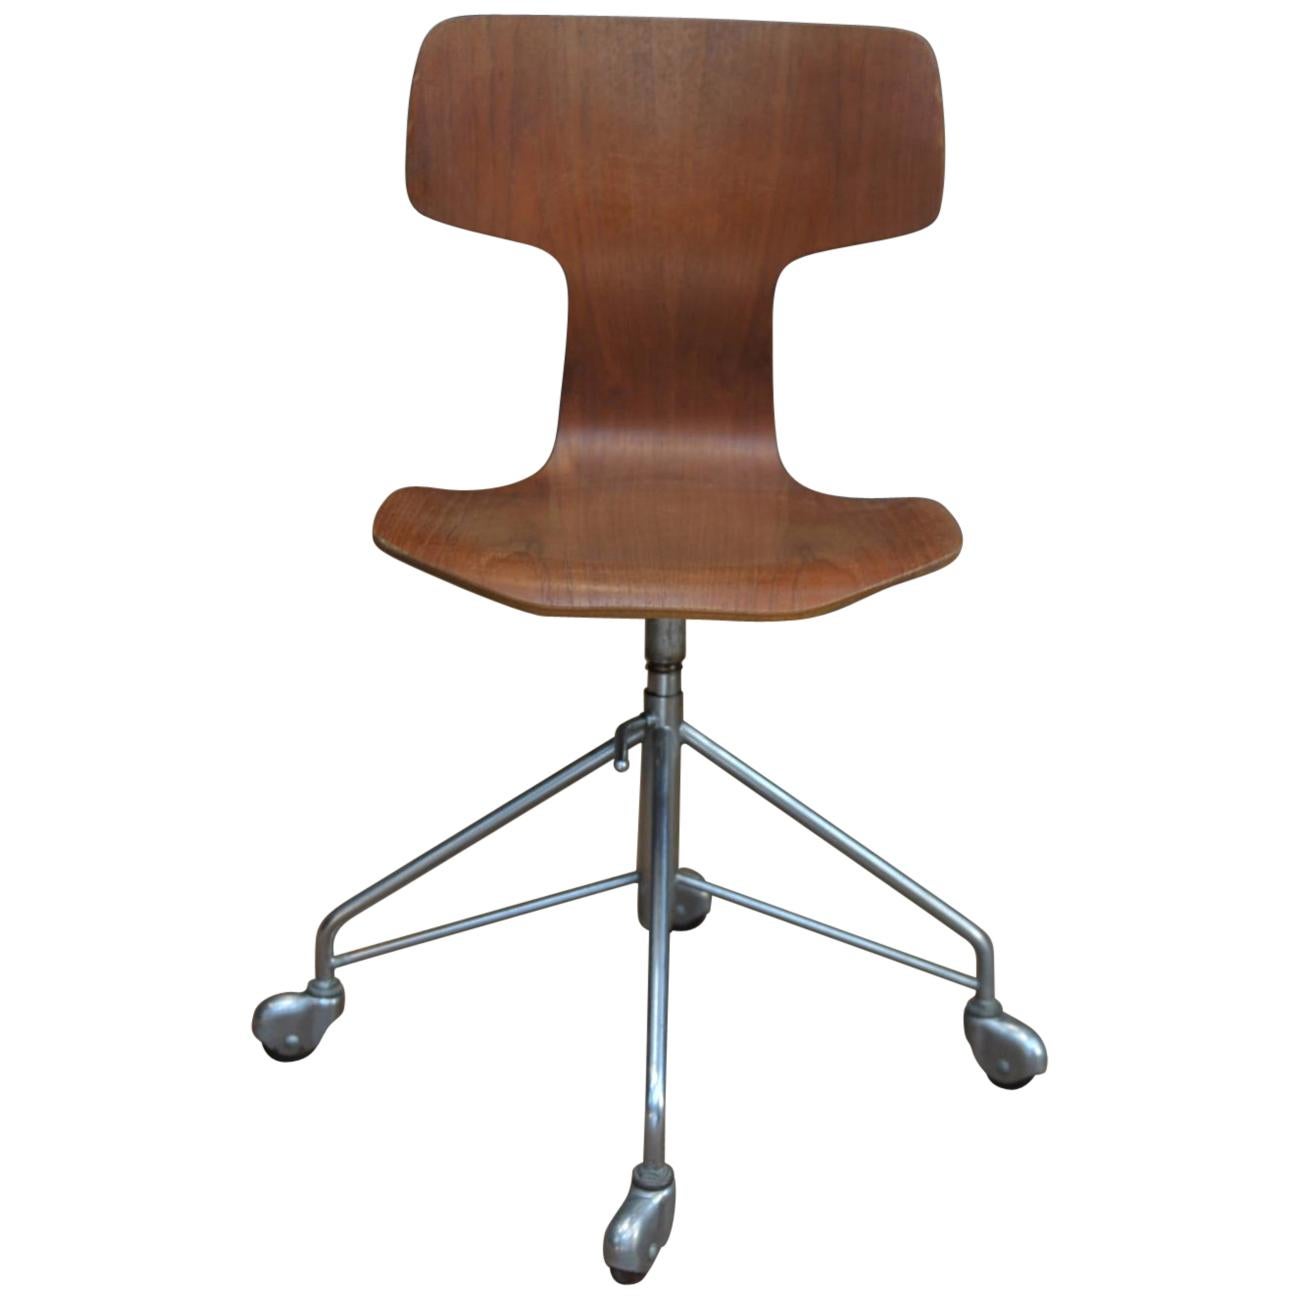 Arne Jacobsen Office Swivel Chair Model Hammer by Fritz Hansen in Denmark